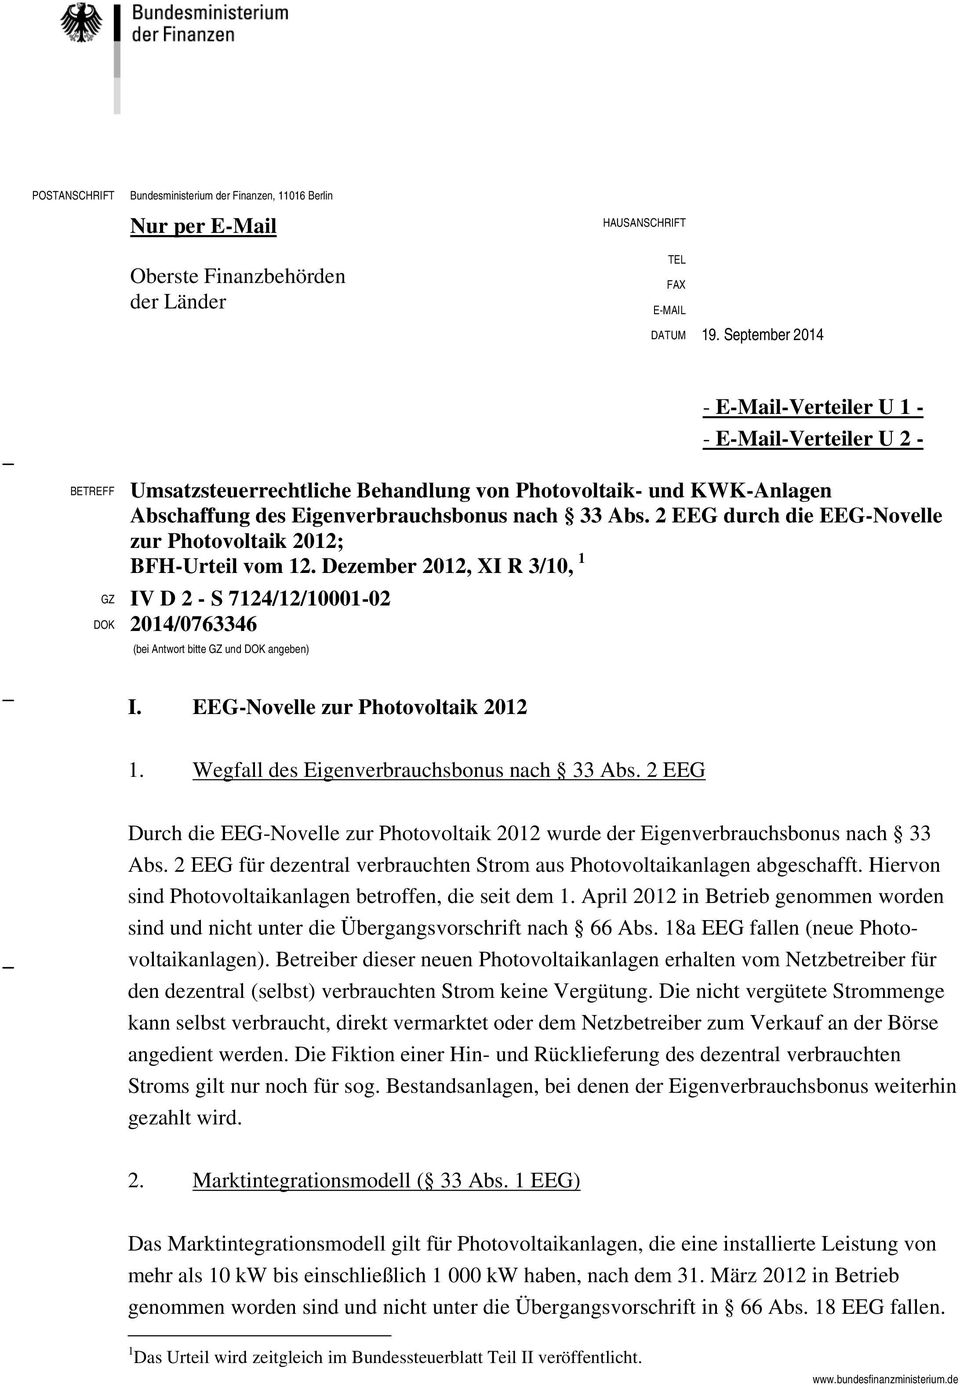 September 2014 - E-Mail-Verteiler U 1 - - E-Mail-Verteiler U 2 - BETREFF Umsatzsteuerrechtliche Behandlung von Photovoltaik- und KWK-Anlagen Abschaffung des Eigenverbrauchsbonus nach 33 Abs.